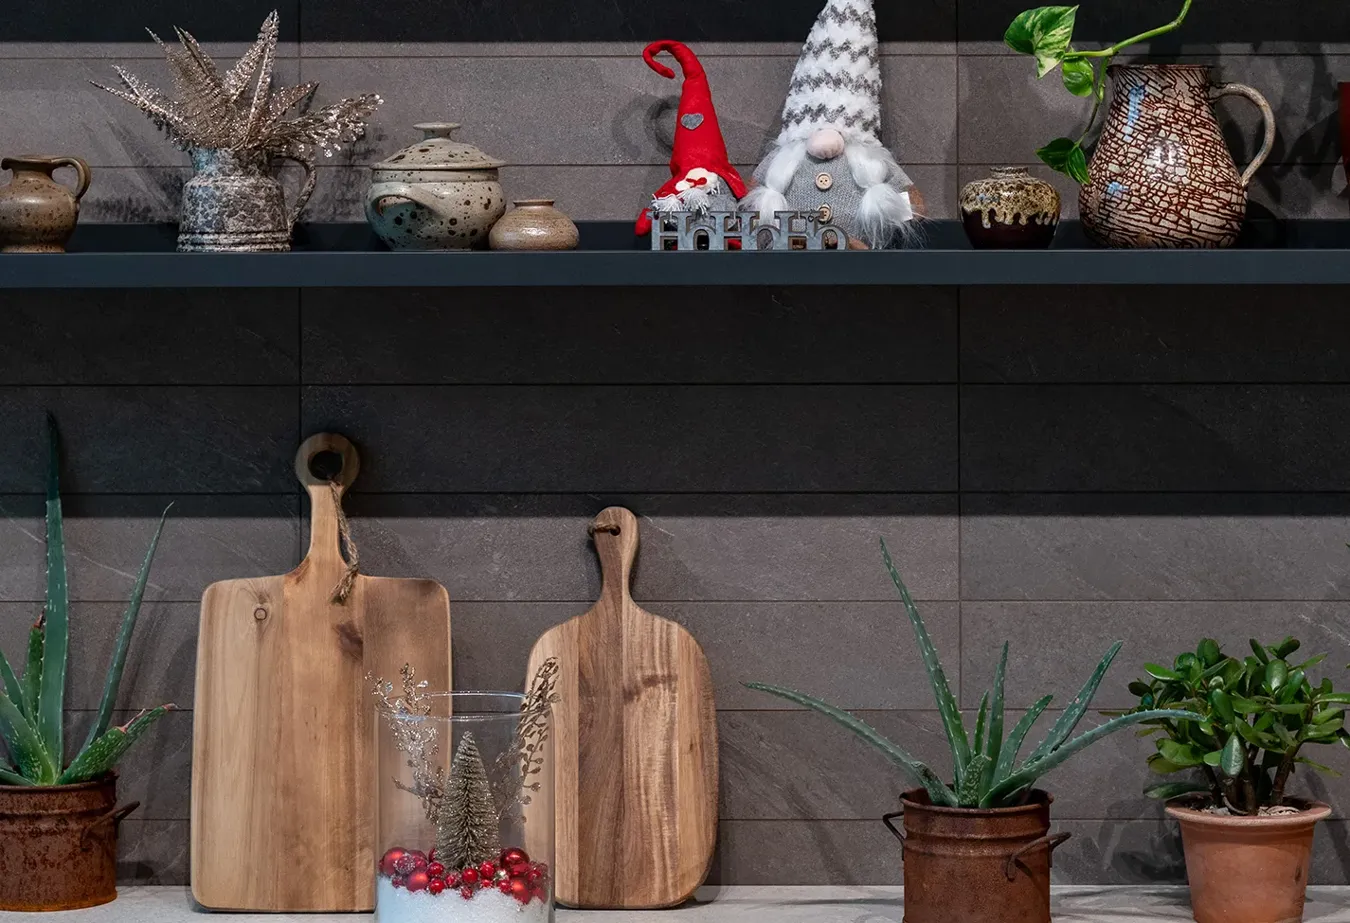 Cucina accogliente con piastrelle effetto pietra della collezione Brystone, decorazioni natalizie tradizionali e accessori in legno naturale.